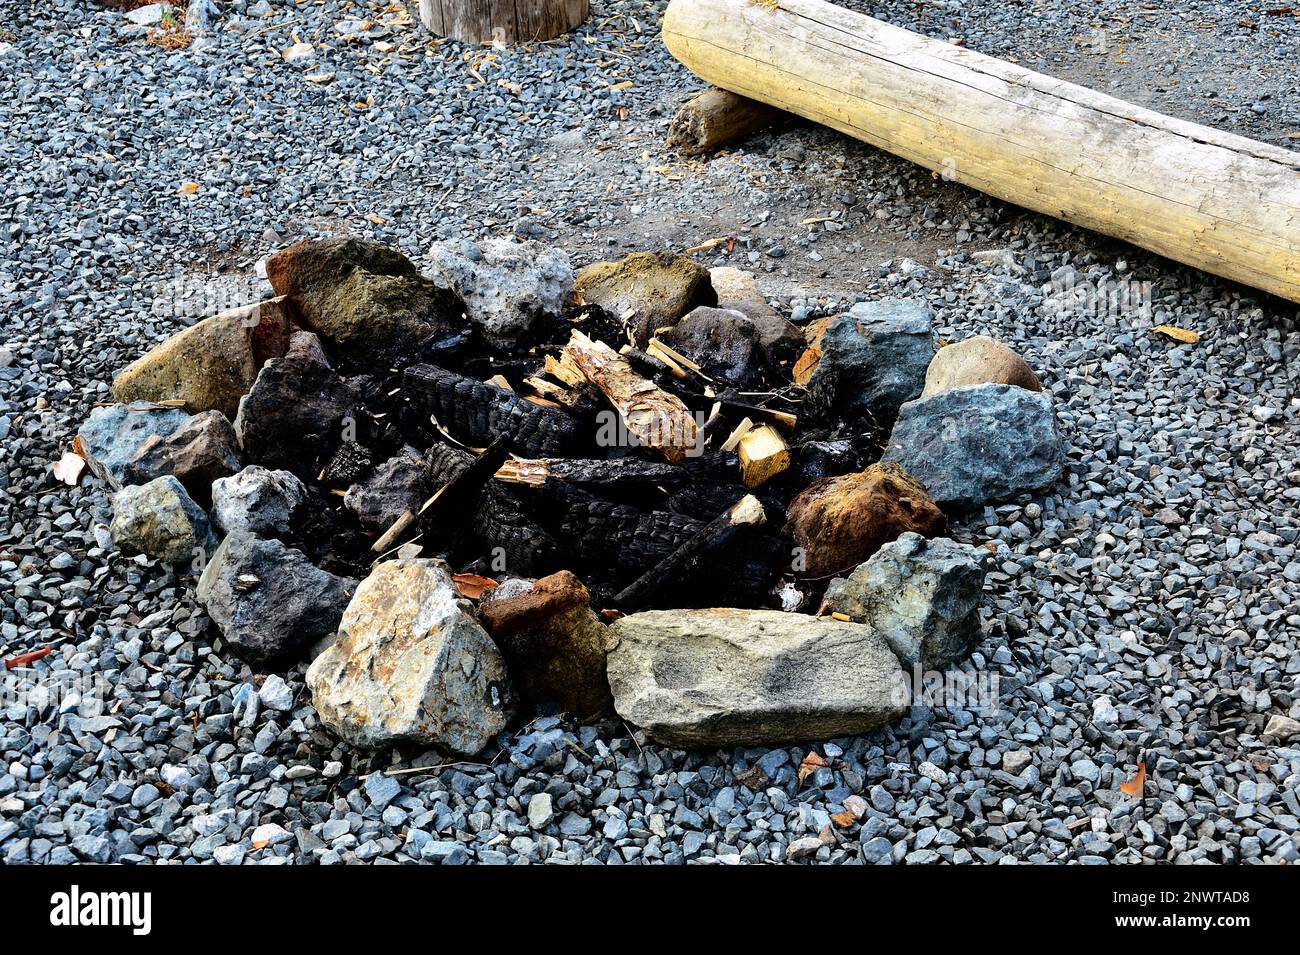 Ein Kreis aus Steinen, um ein Lagerfeuer im Freien zu umgeben, das die verbrannten Schilde des Lagerfeuers der letzten Nacht enthält. Stockfoto